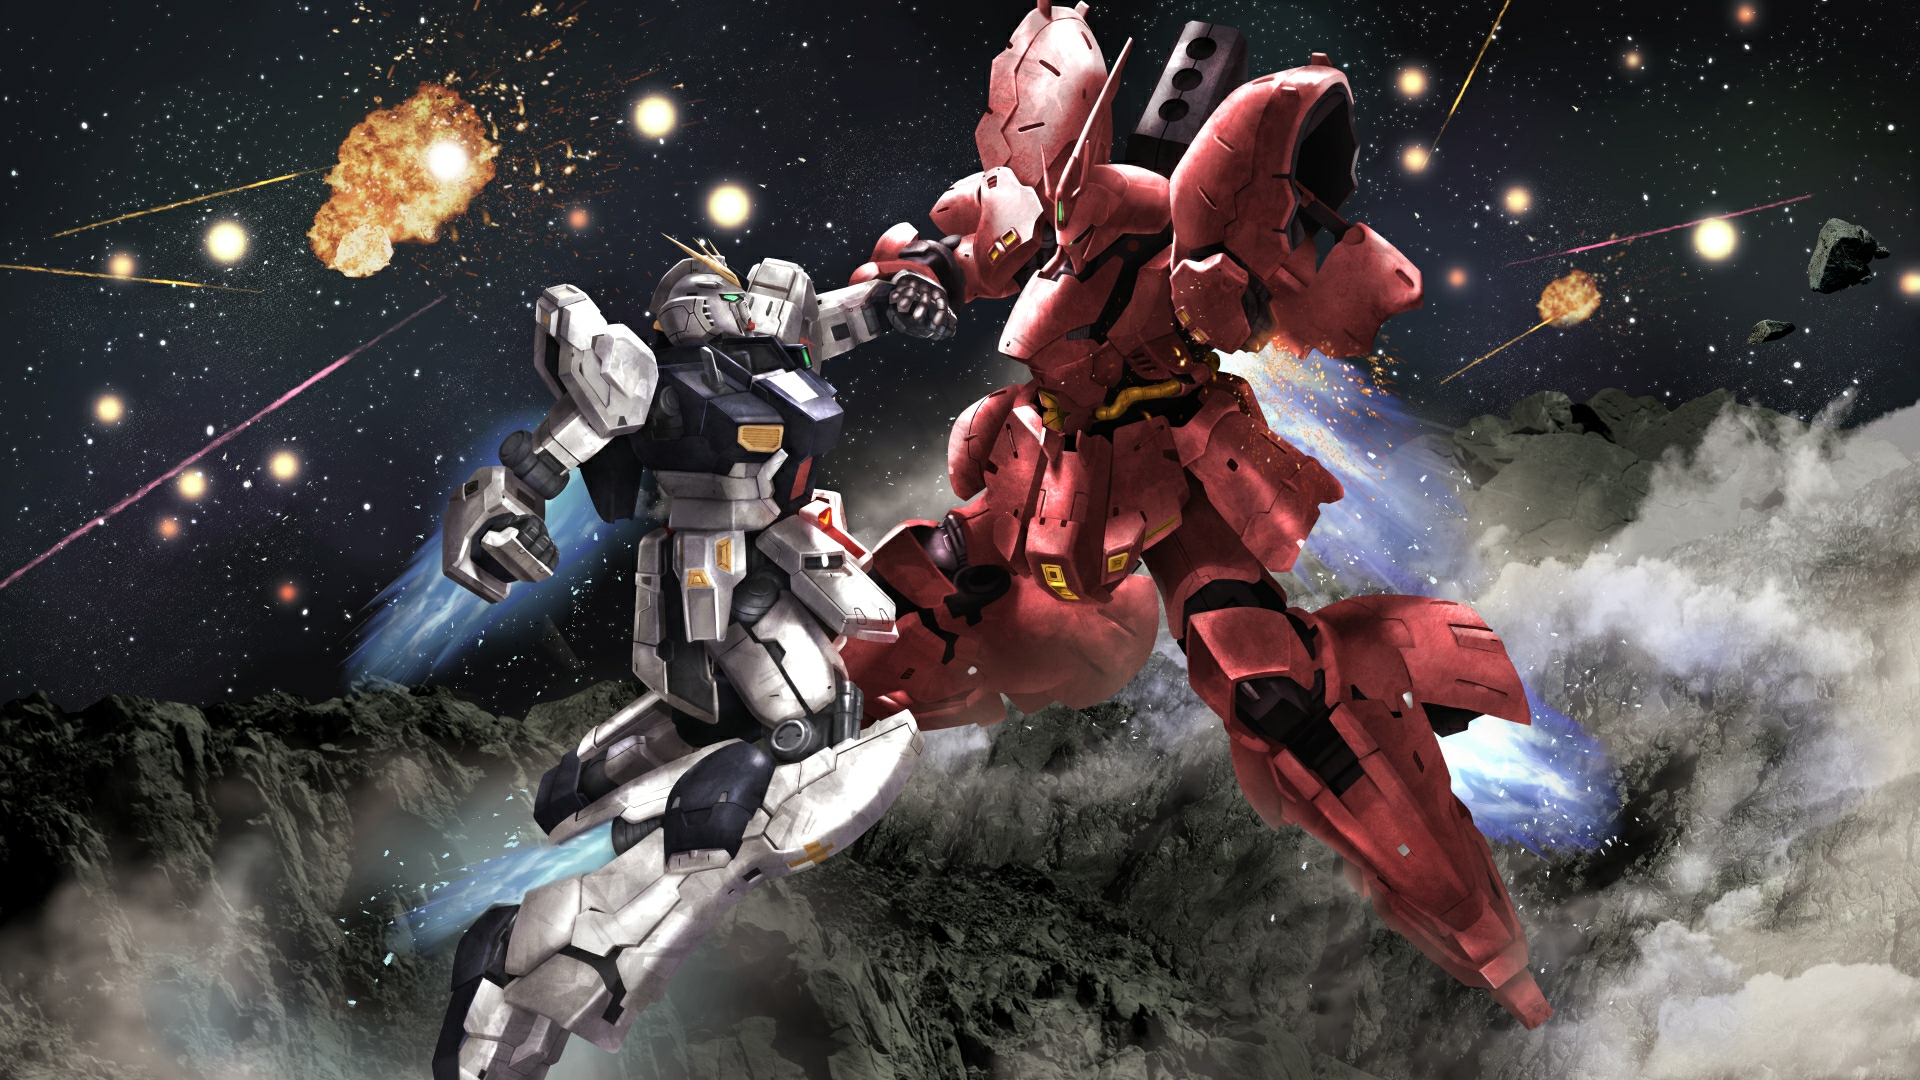 Anime 1920x1080 anime mechs Gundam Mobile Suit Mobile Suit Gundam Char&#039;s Counterattack Super Robot Taisen RX-93 v Gundam Sazabi artwork digital art fan art